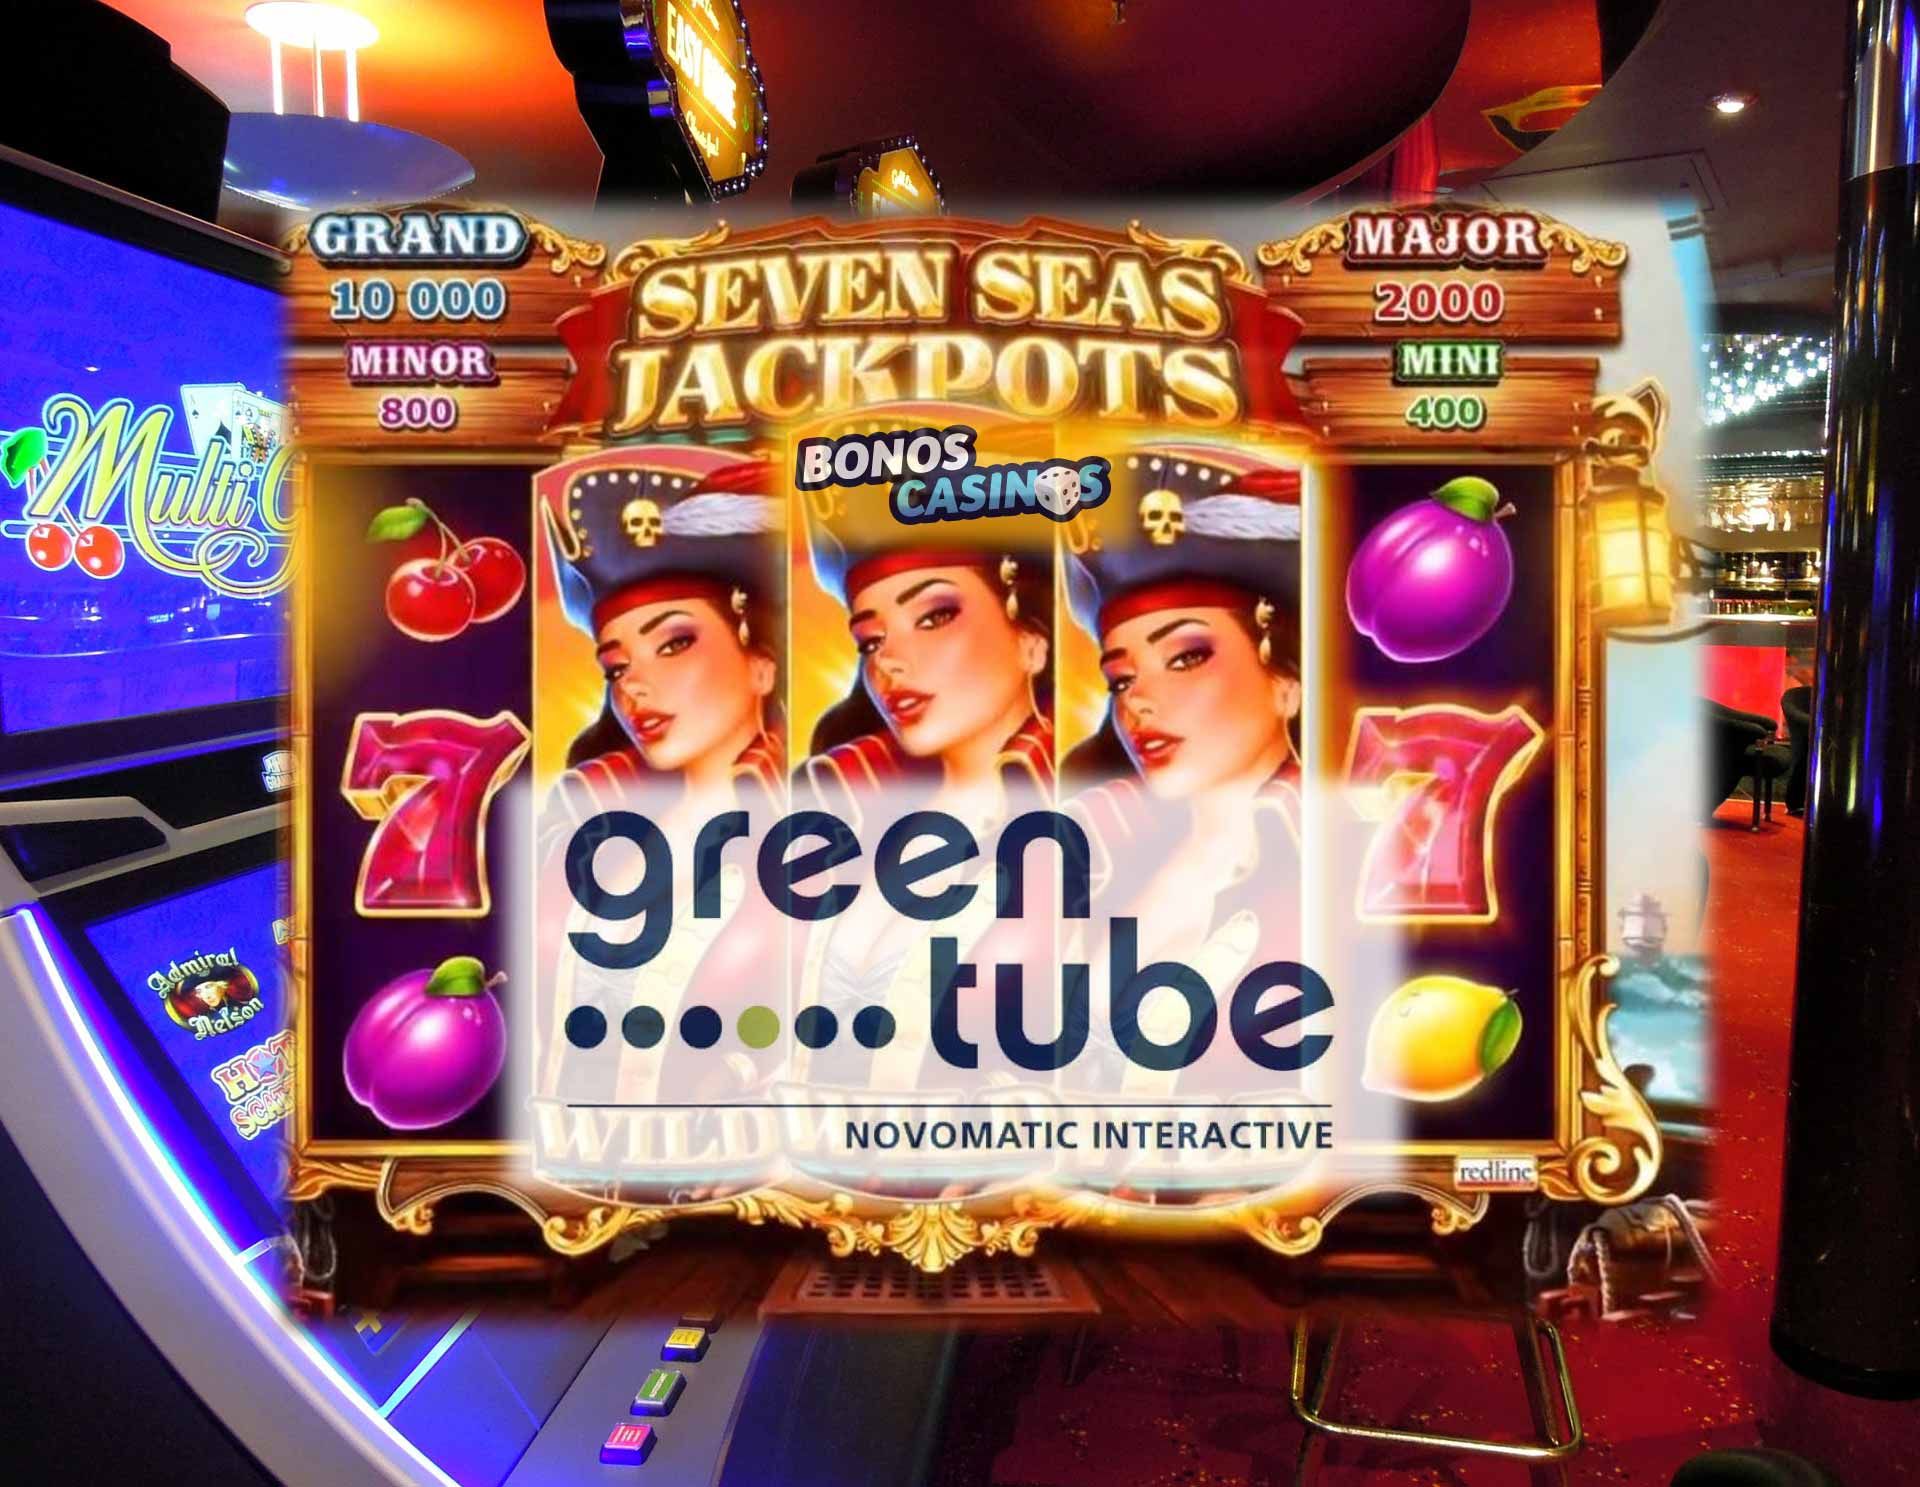 7 seas casino free blackjack